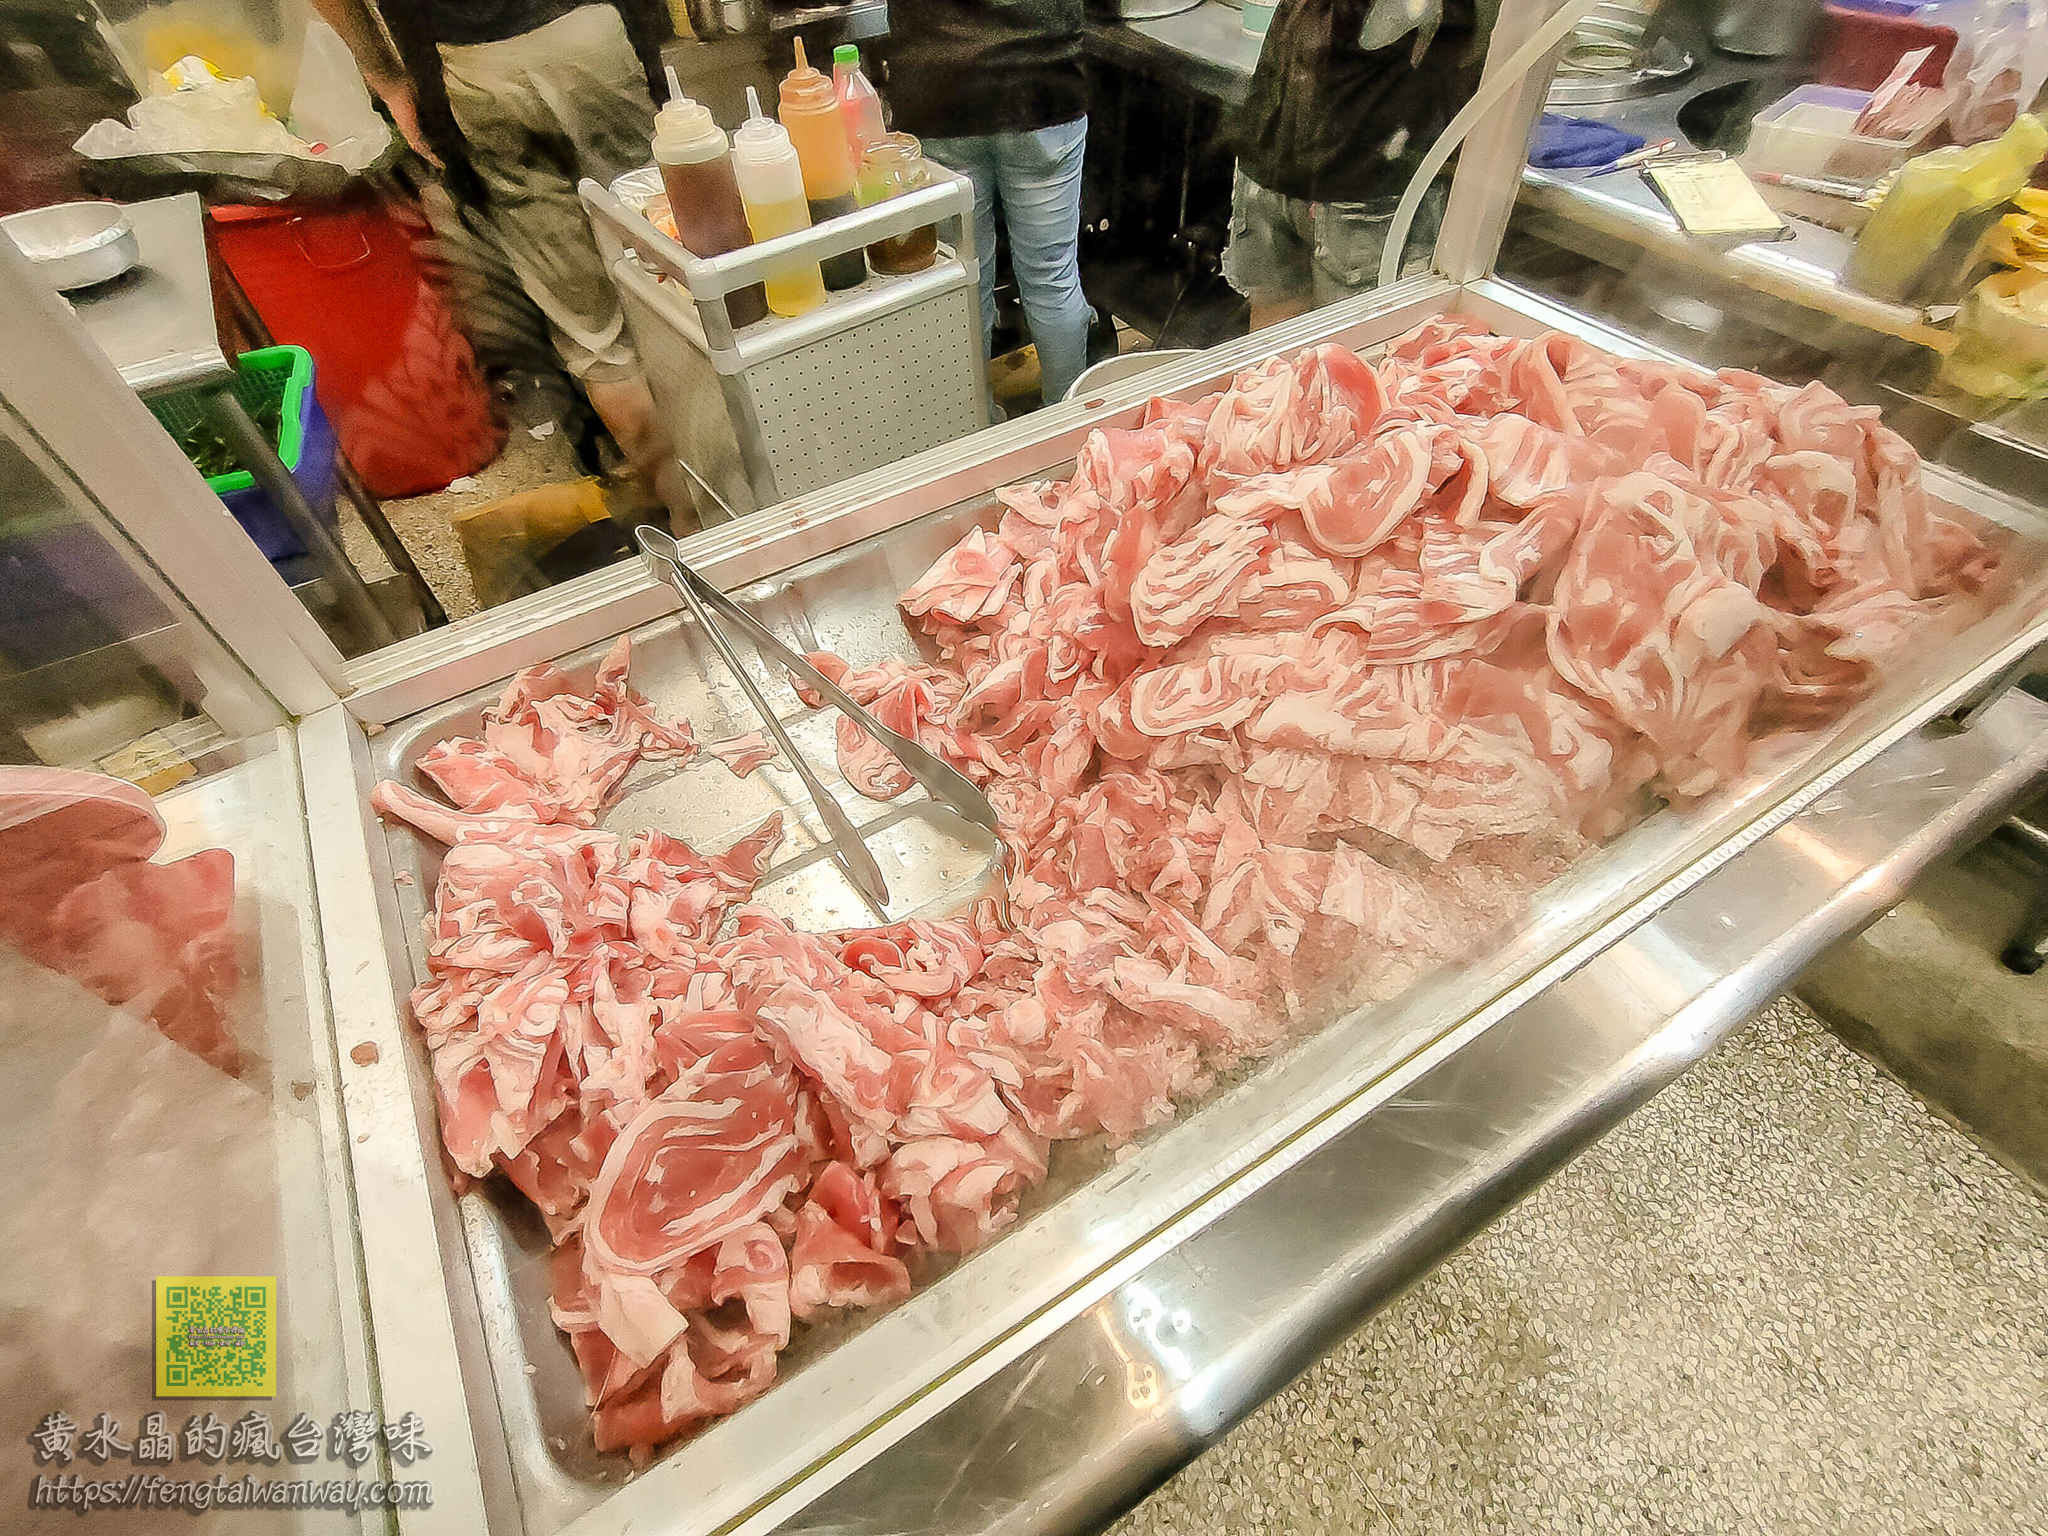 大廟生炒羊肉(原永和市場)【桃園美食】|舊永和市場搬過來的高人氣羊肉料理深夜食堂